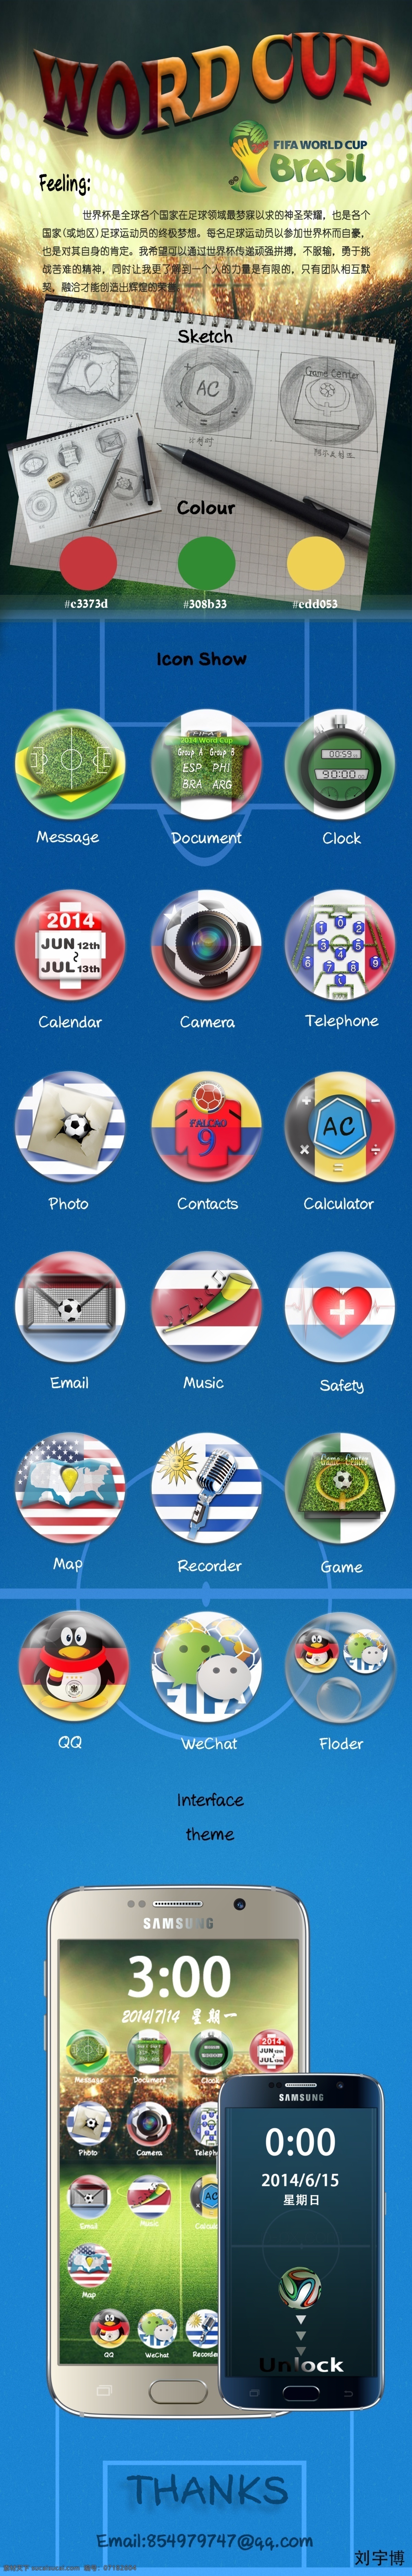 世界杯 icon 2014 强 国家 国旗 背景 元素 图标 展现 内容 两个 附加 三方 玻璃球罩子 三星手机 展示 屏 蓝色